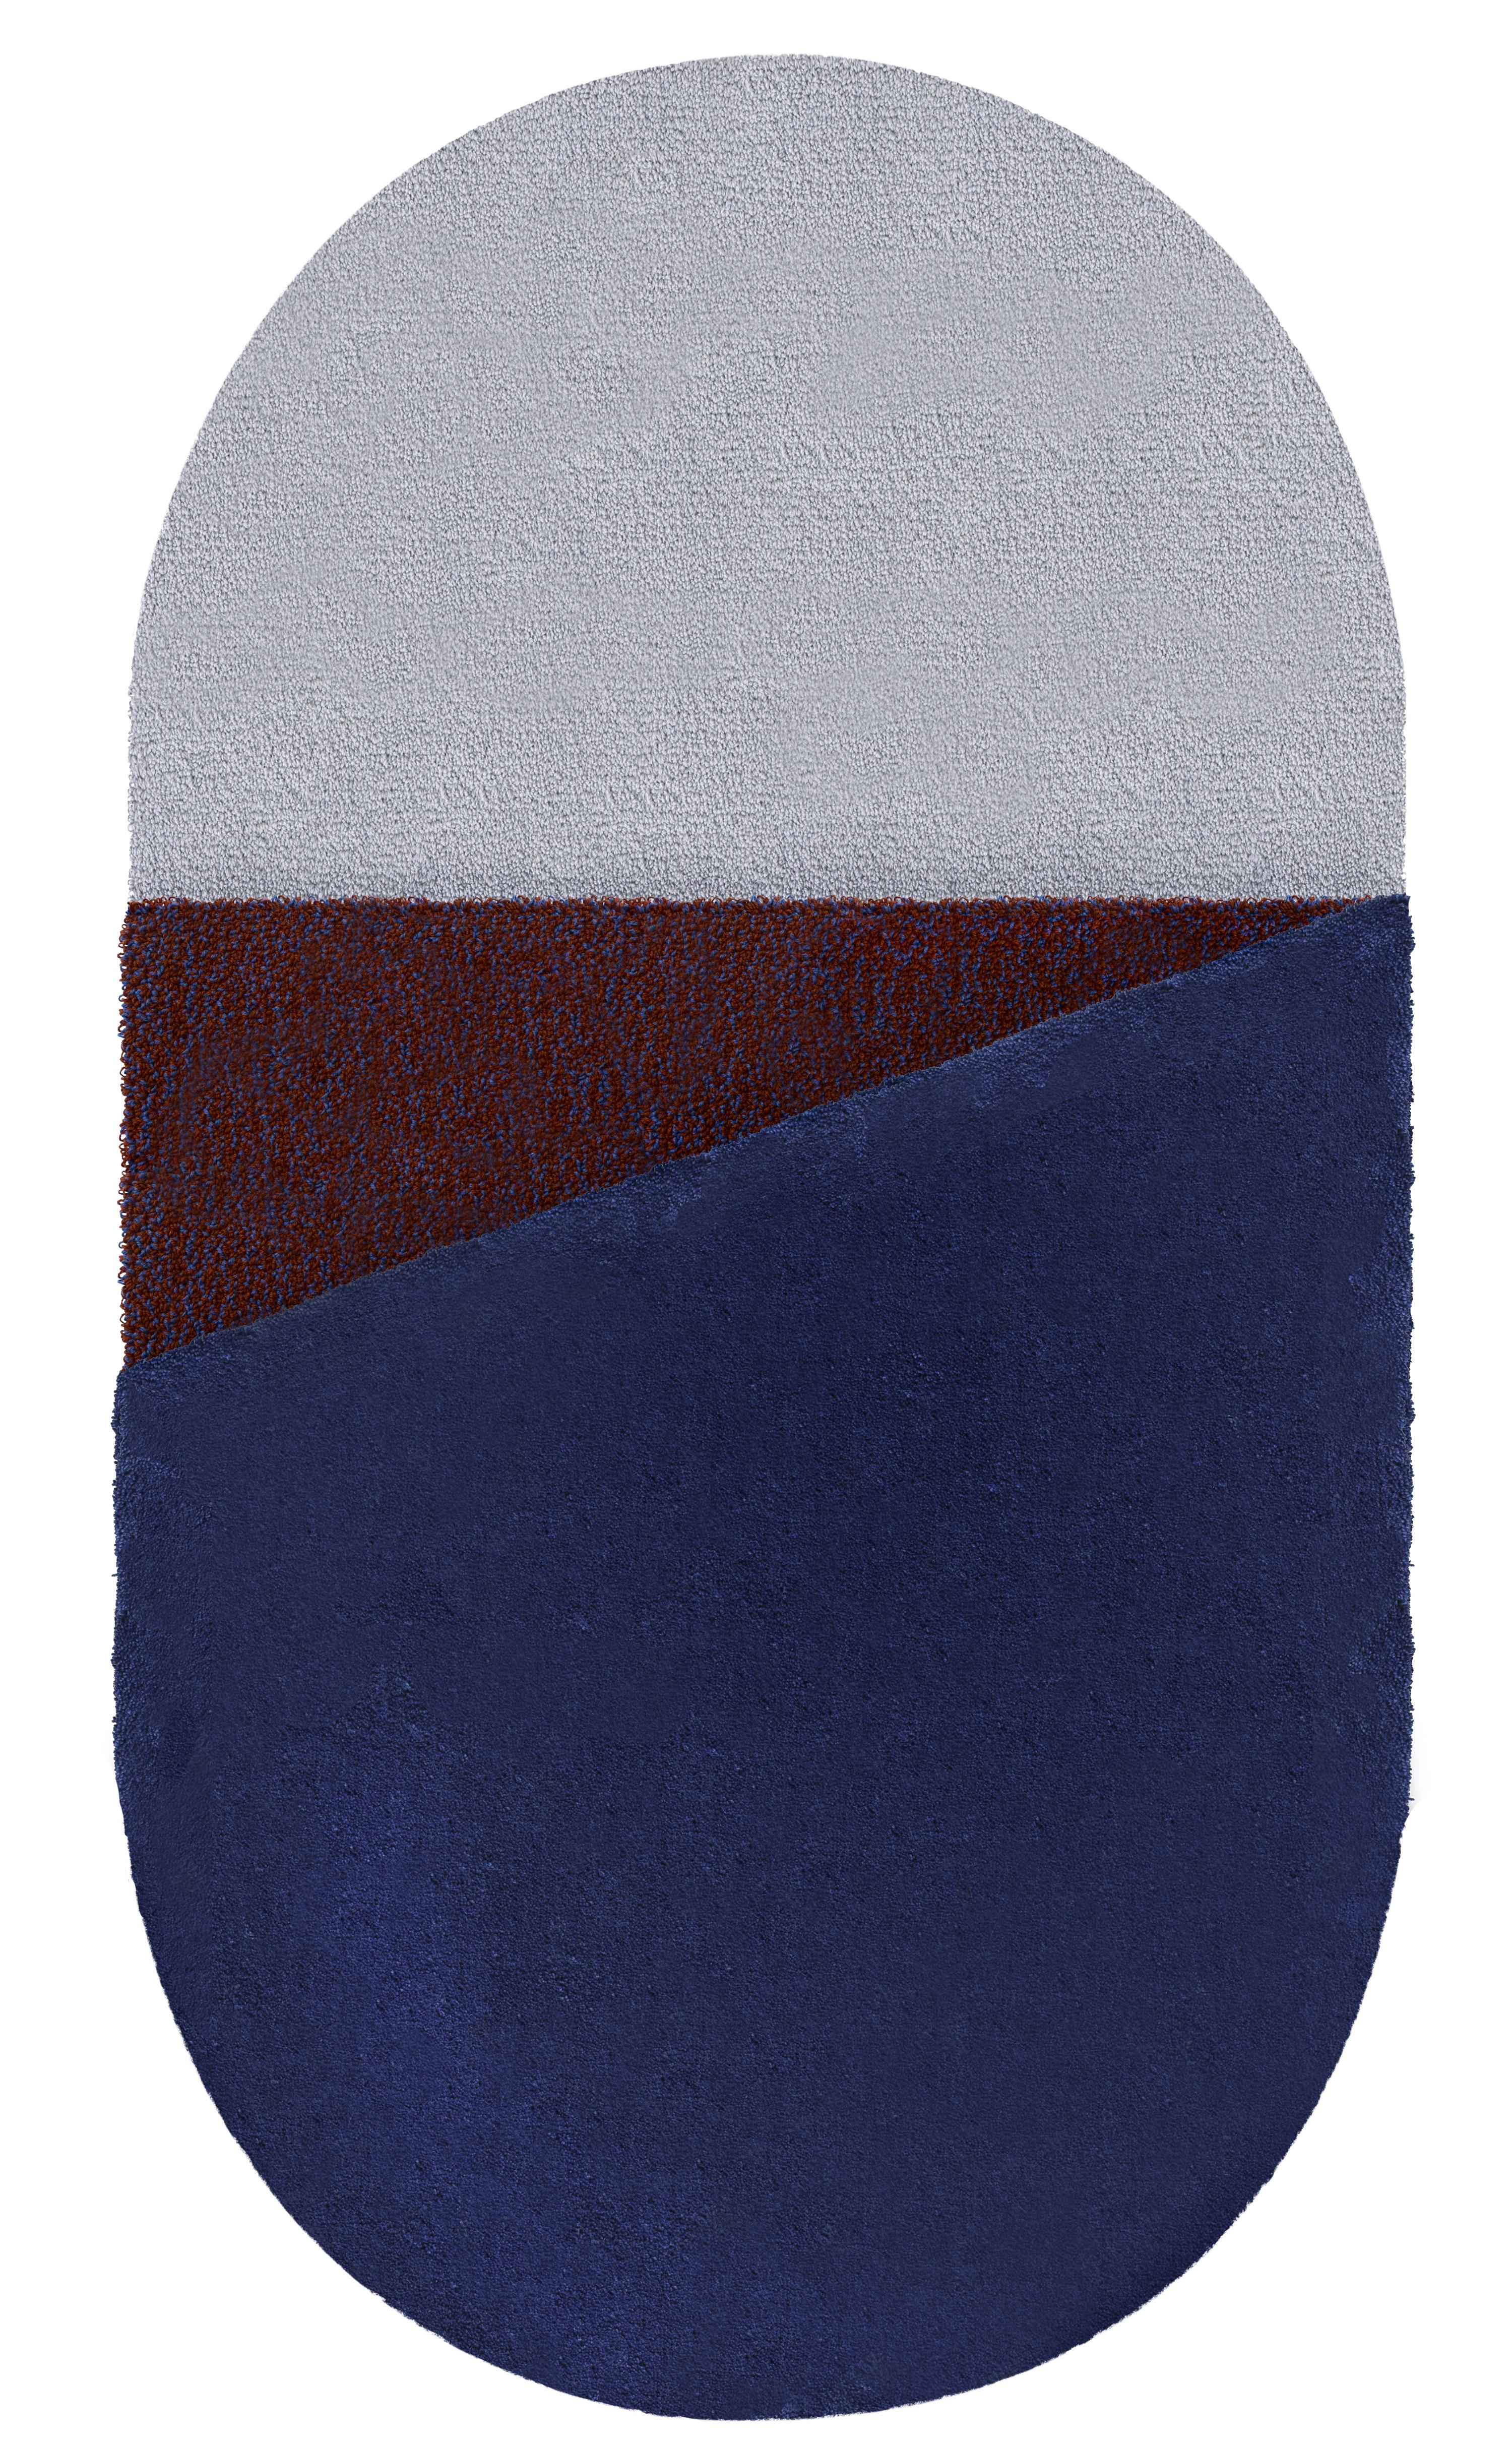 Blauer Oci Rechtser Teppich von Seraina Lareida
Abmessungen: B 70 x H 130 cm 
MATERIALIEN: 100% New Zeland Wolle bester Qualität.
Erhältlich in den Größen Medium und Large. Auch in folgenden Farben erhältlich: Brick/Pink, Gelb/Grau, Brick/Pink,